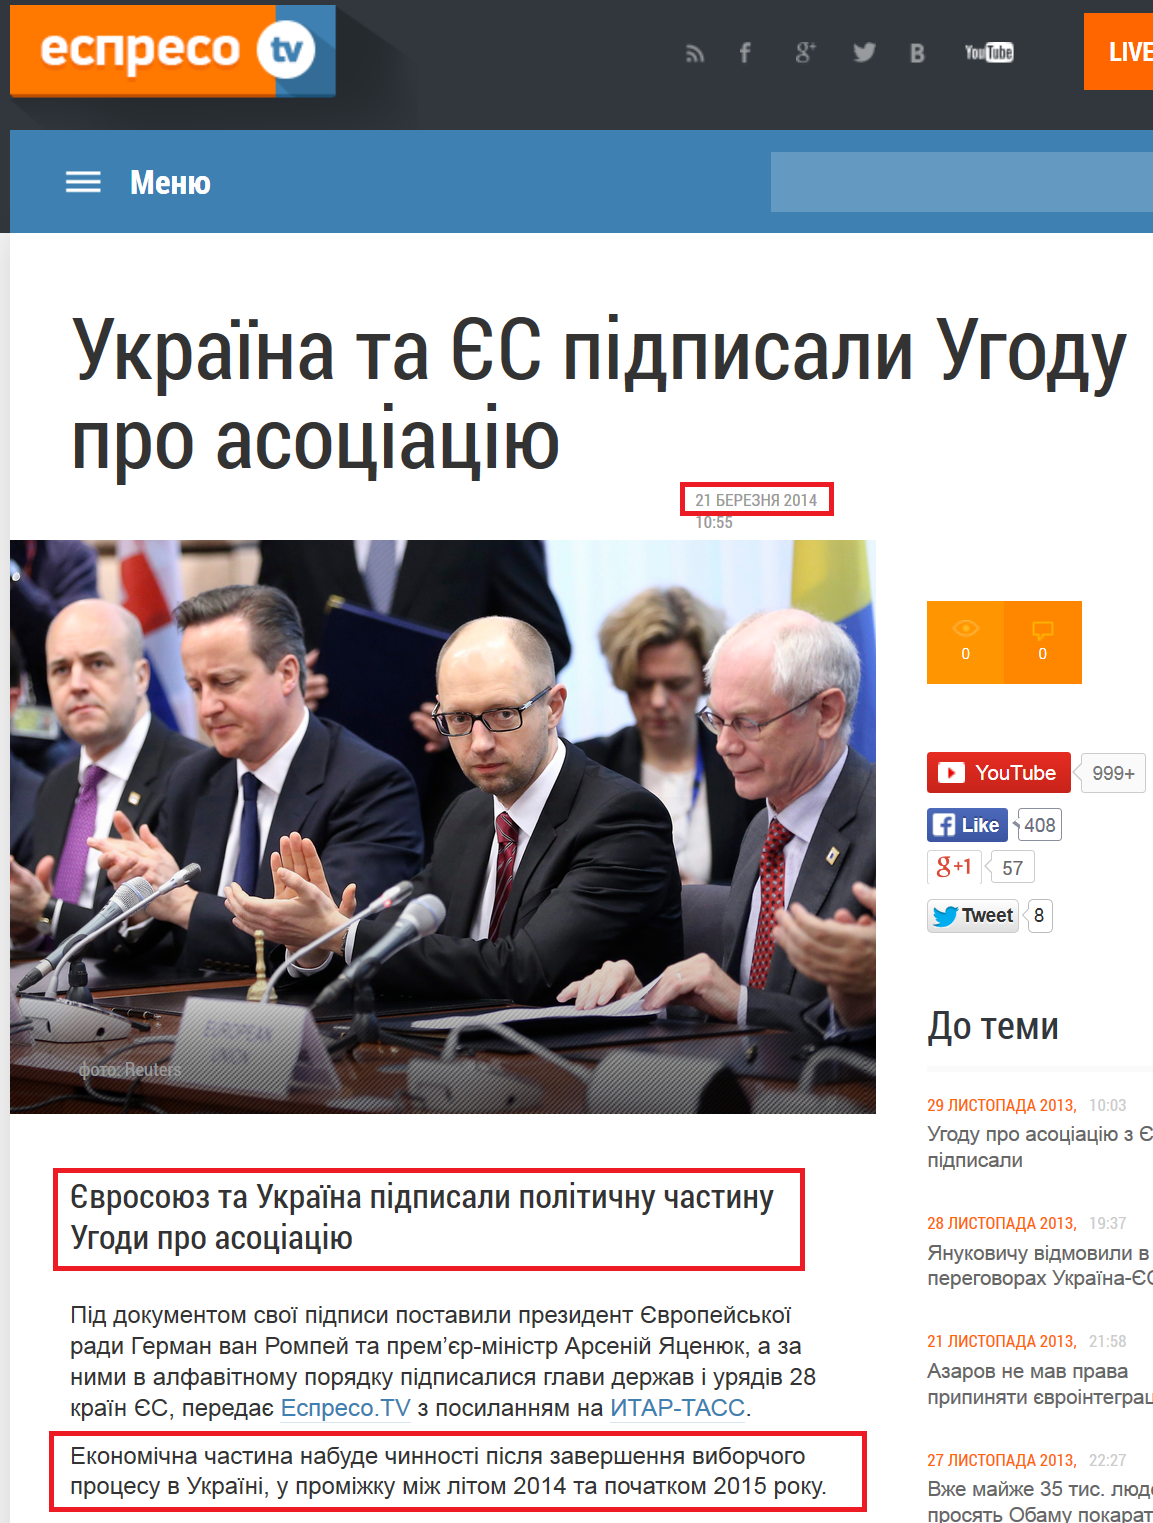 http://espreso.tv/new/2014/03/21/ukrayina_ta_yes_pidpysaly_uhodu_pro_asociaciyu